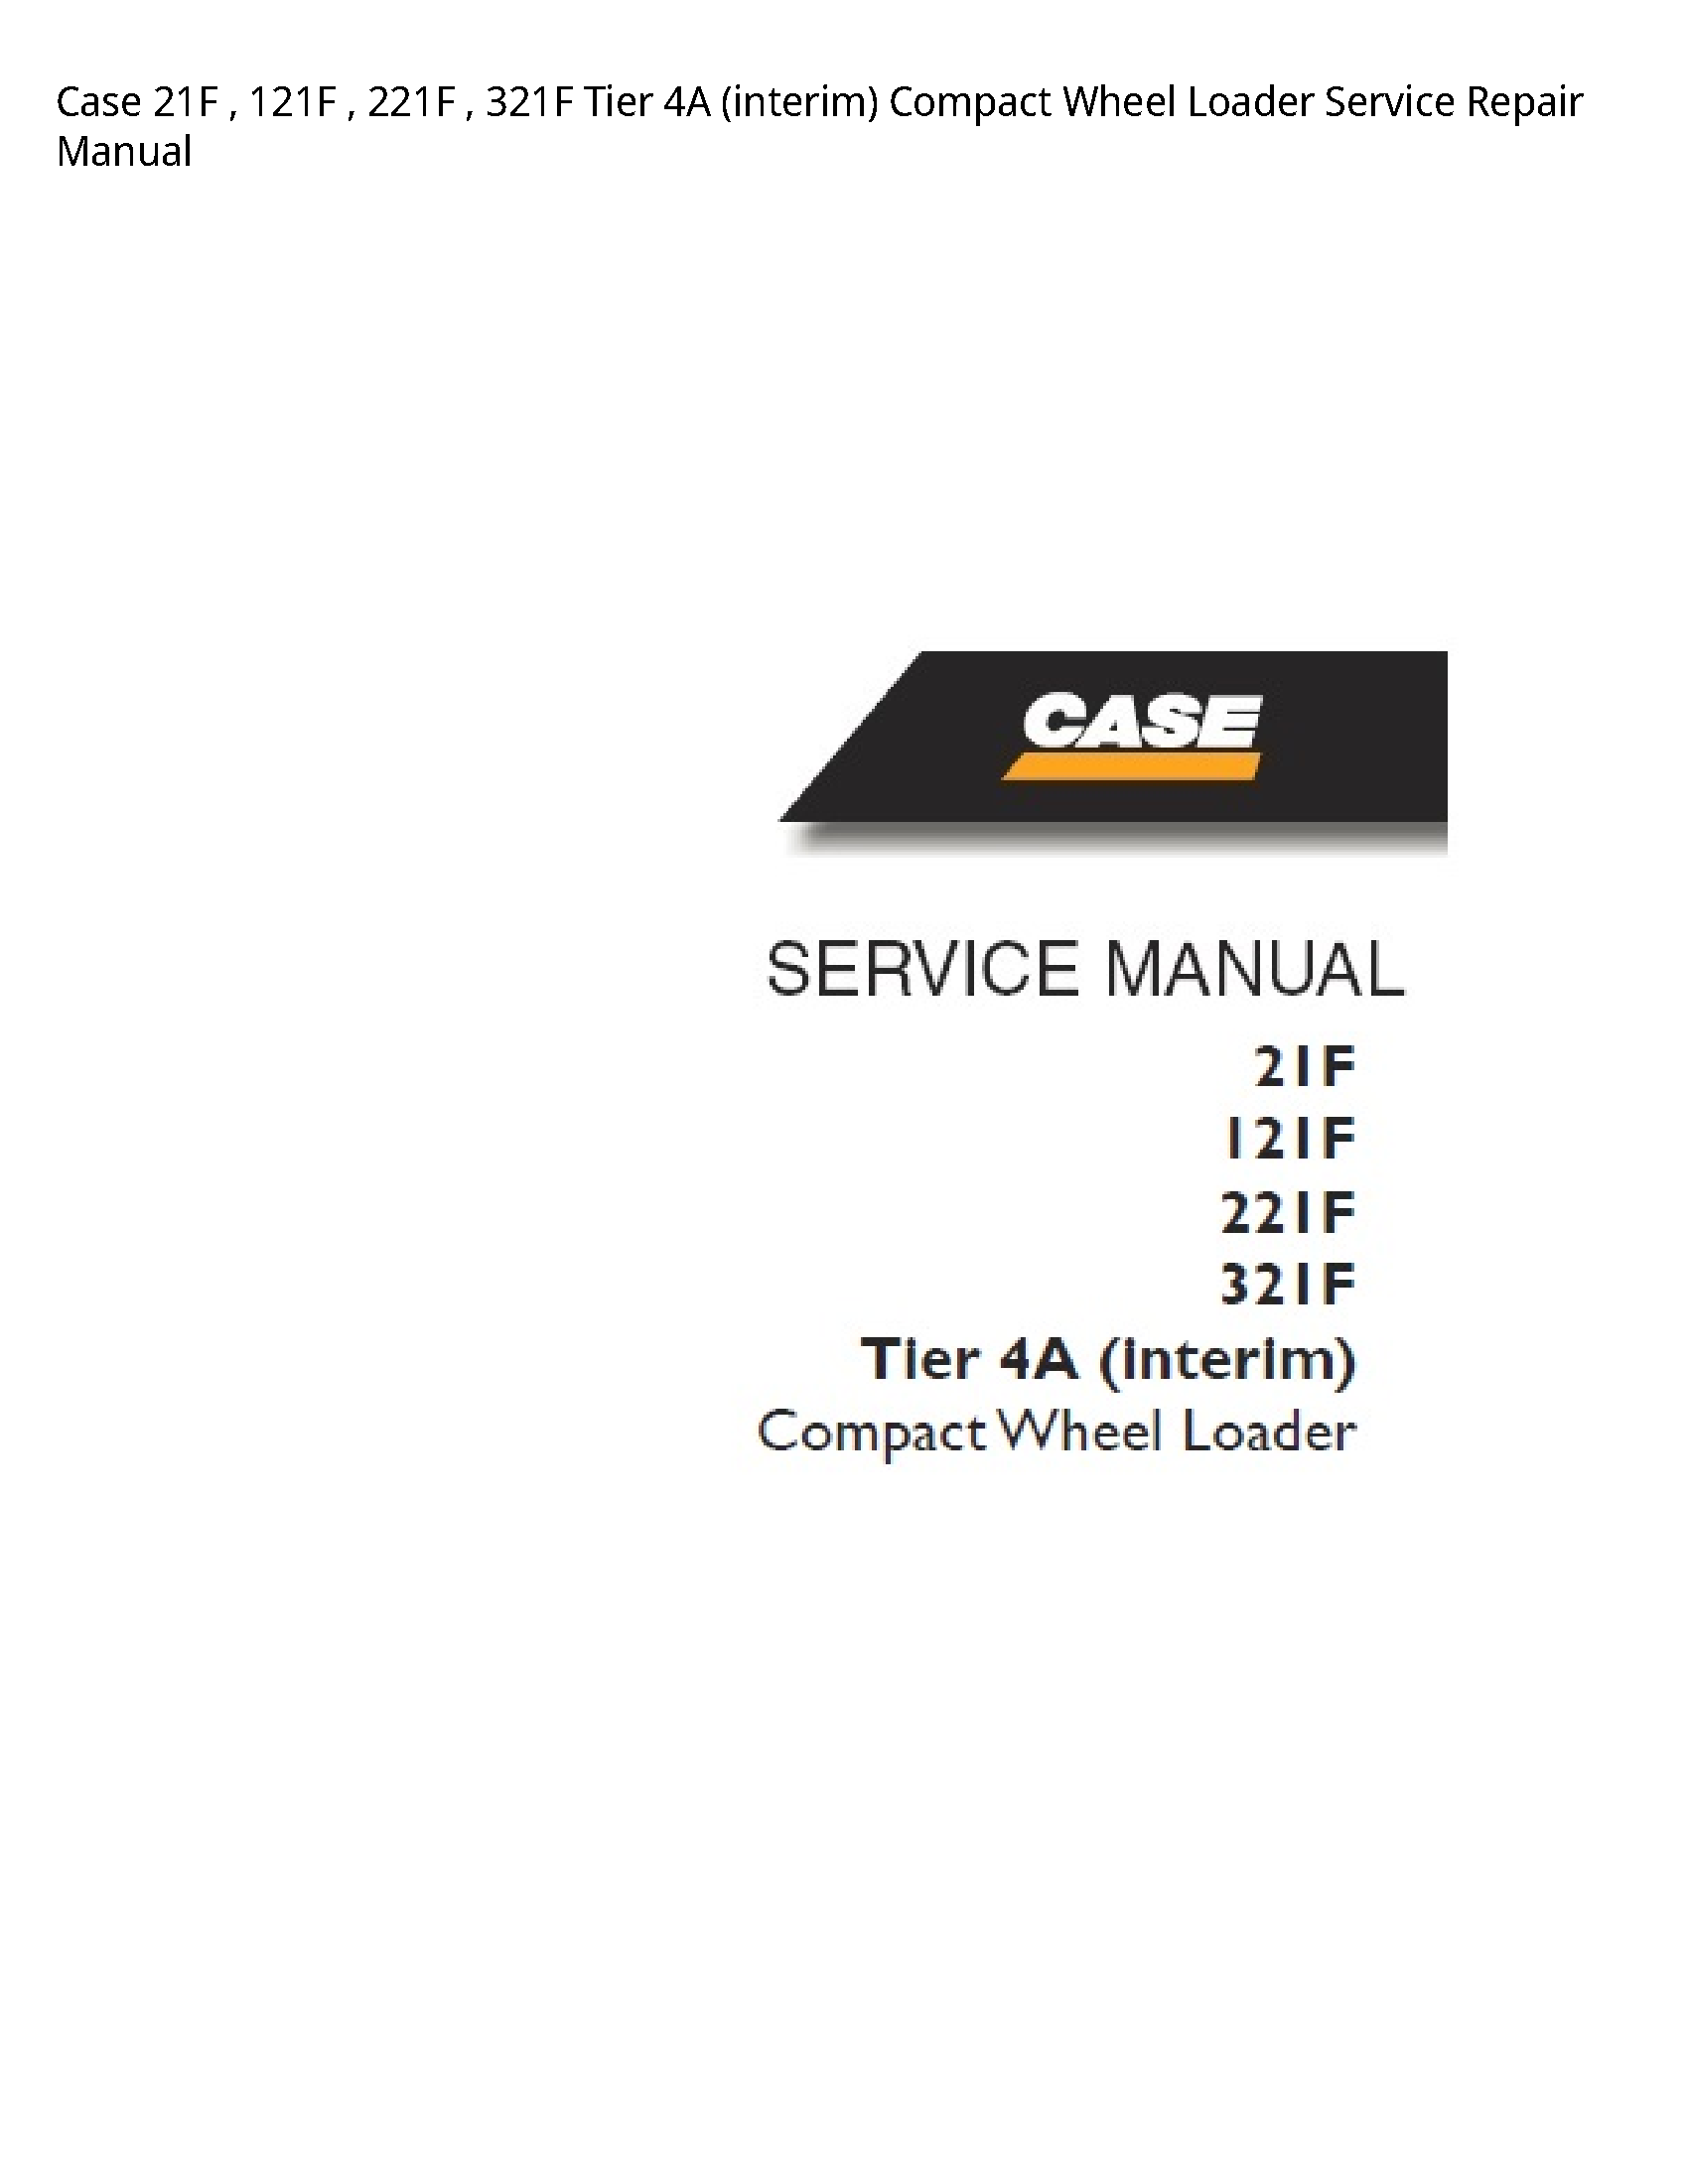 Case/Case IH 21F Tier (interim) Compact Wheel Loader manual